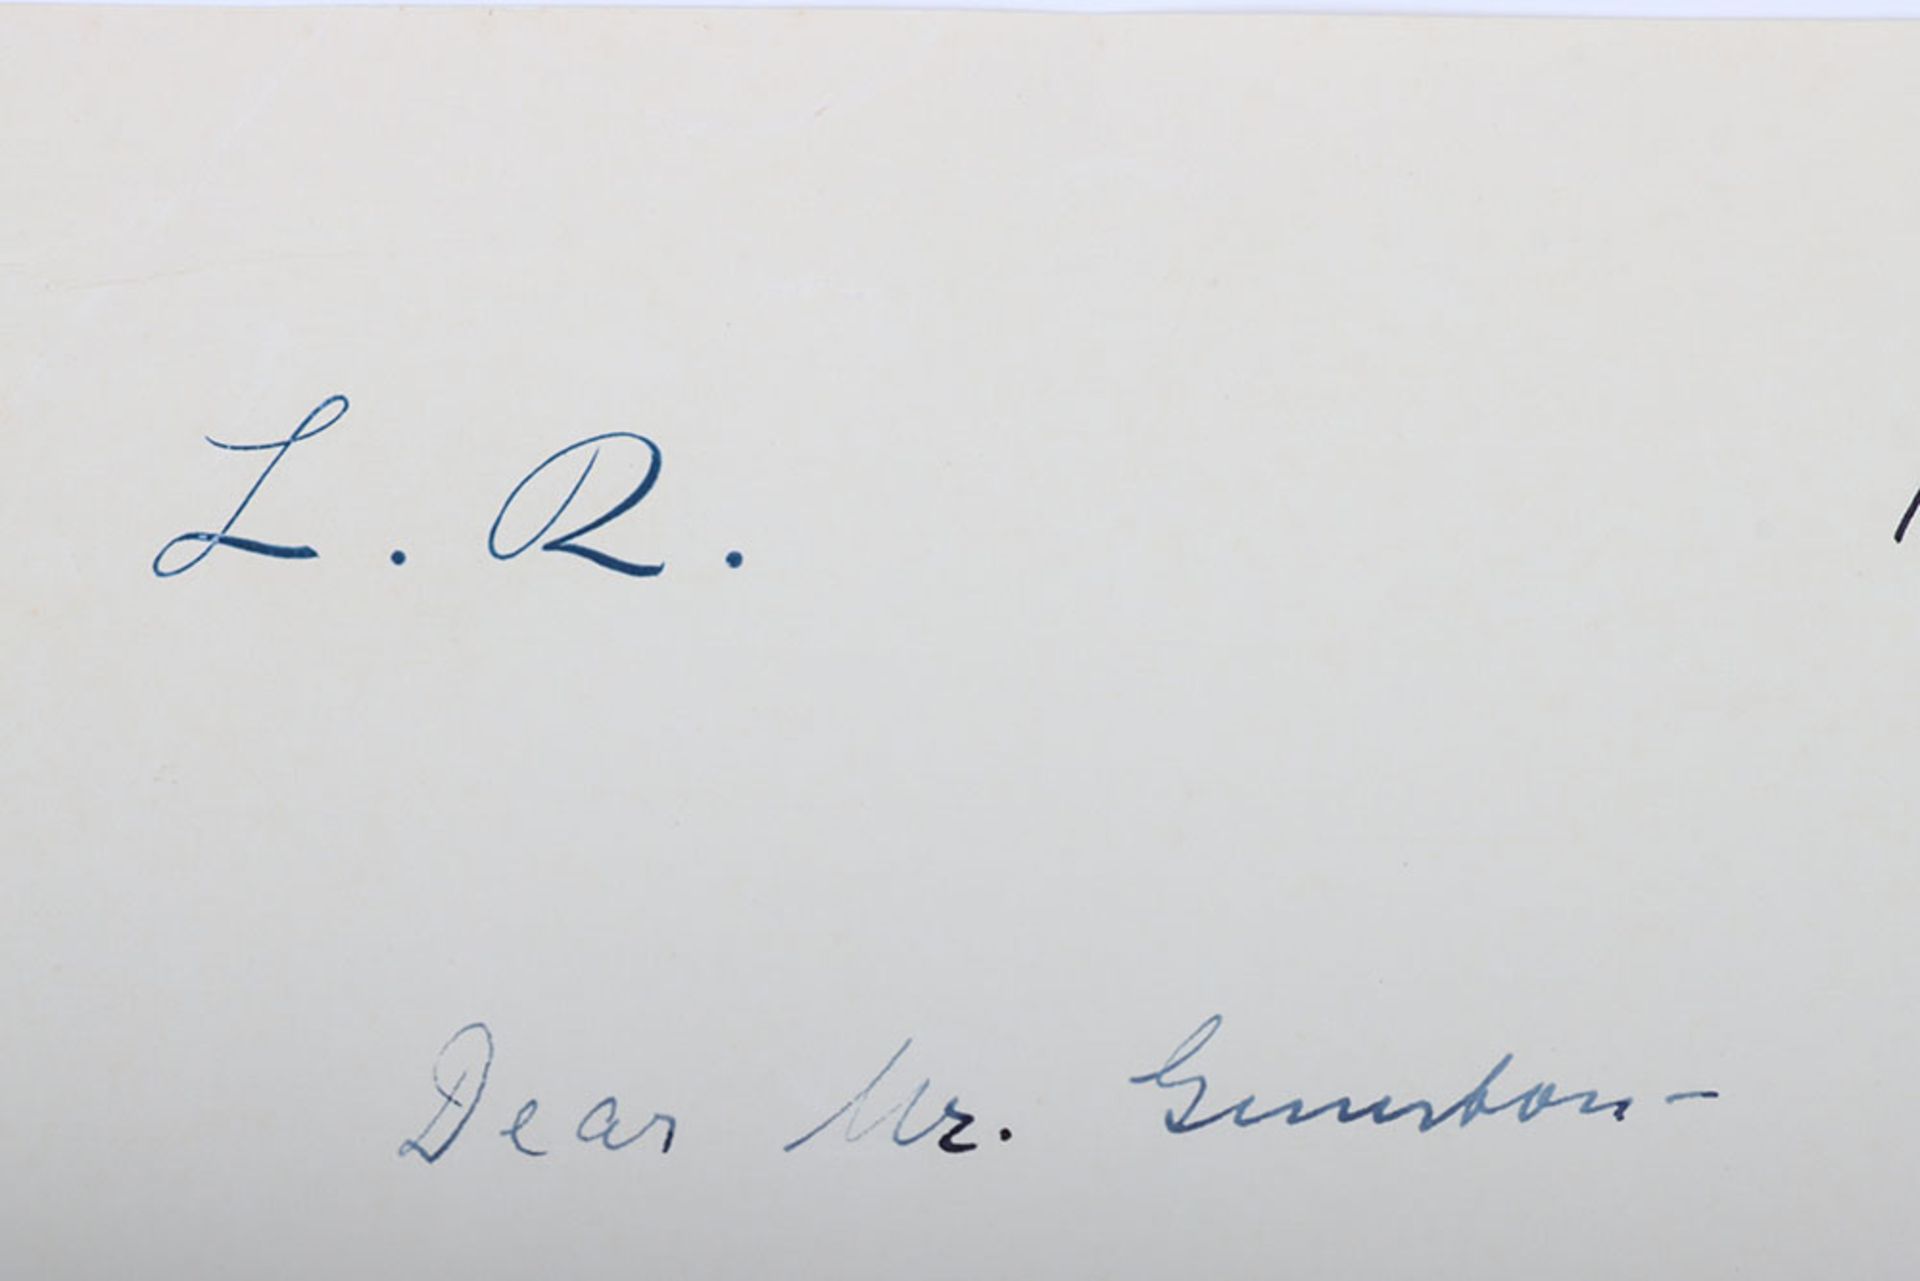 Leni Riefenstahl. Famous German film director signed letter - Image 4 of 5